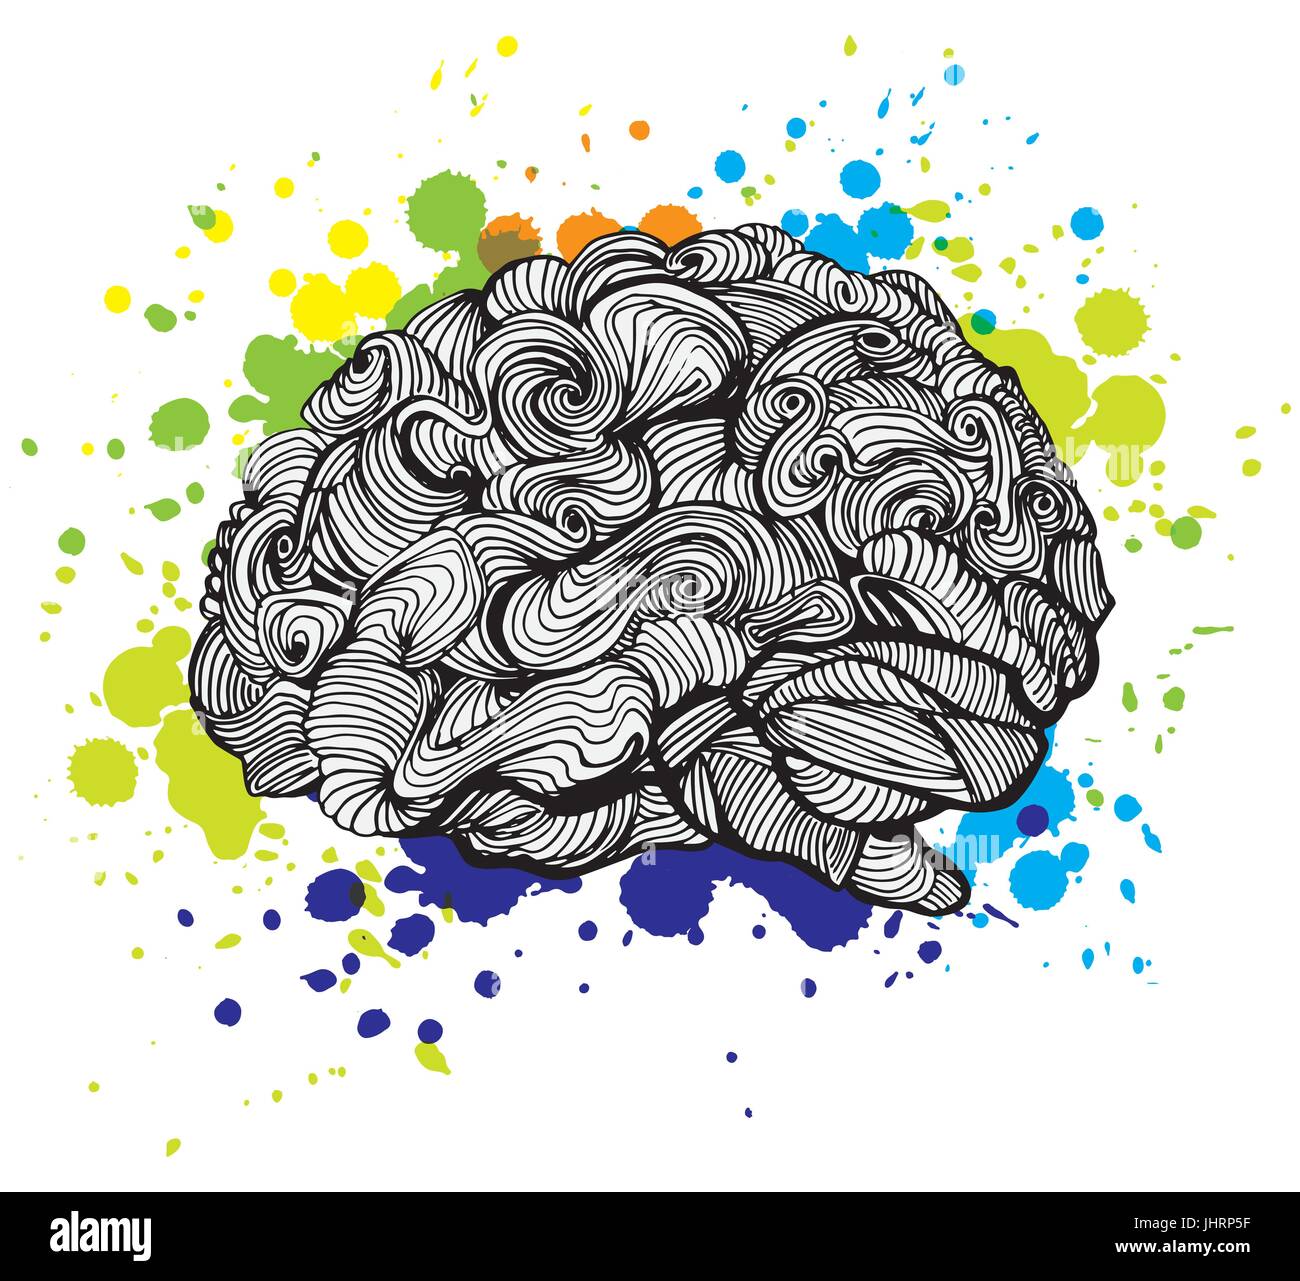 Cerveau idée lumineuse illustration. Vecteur Doodle concept a propos de cerveau humain et d'idées. Illustration créative Illustration de Vecteur